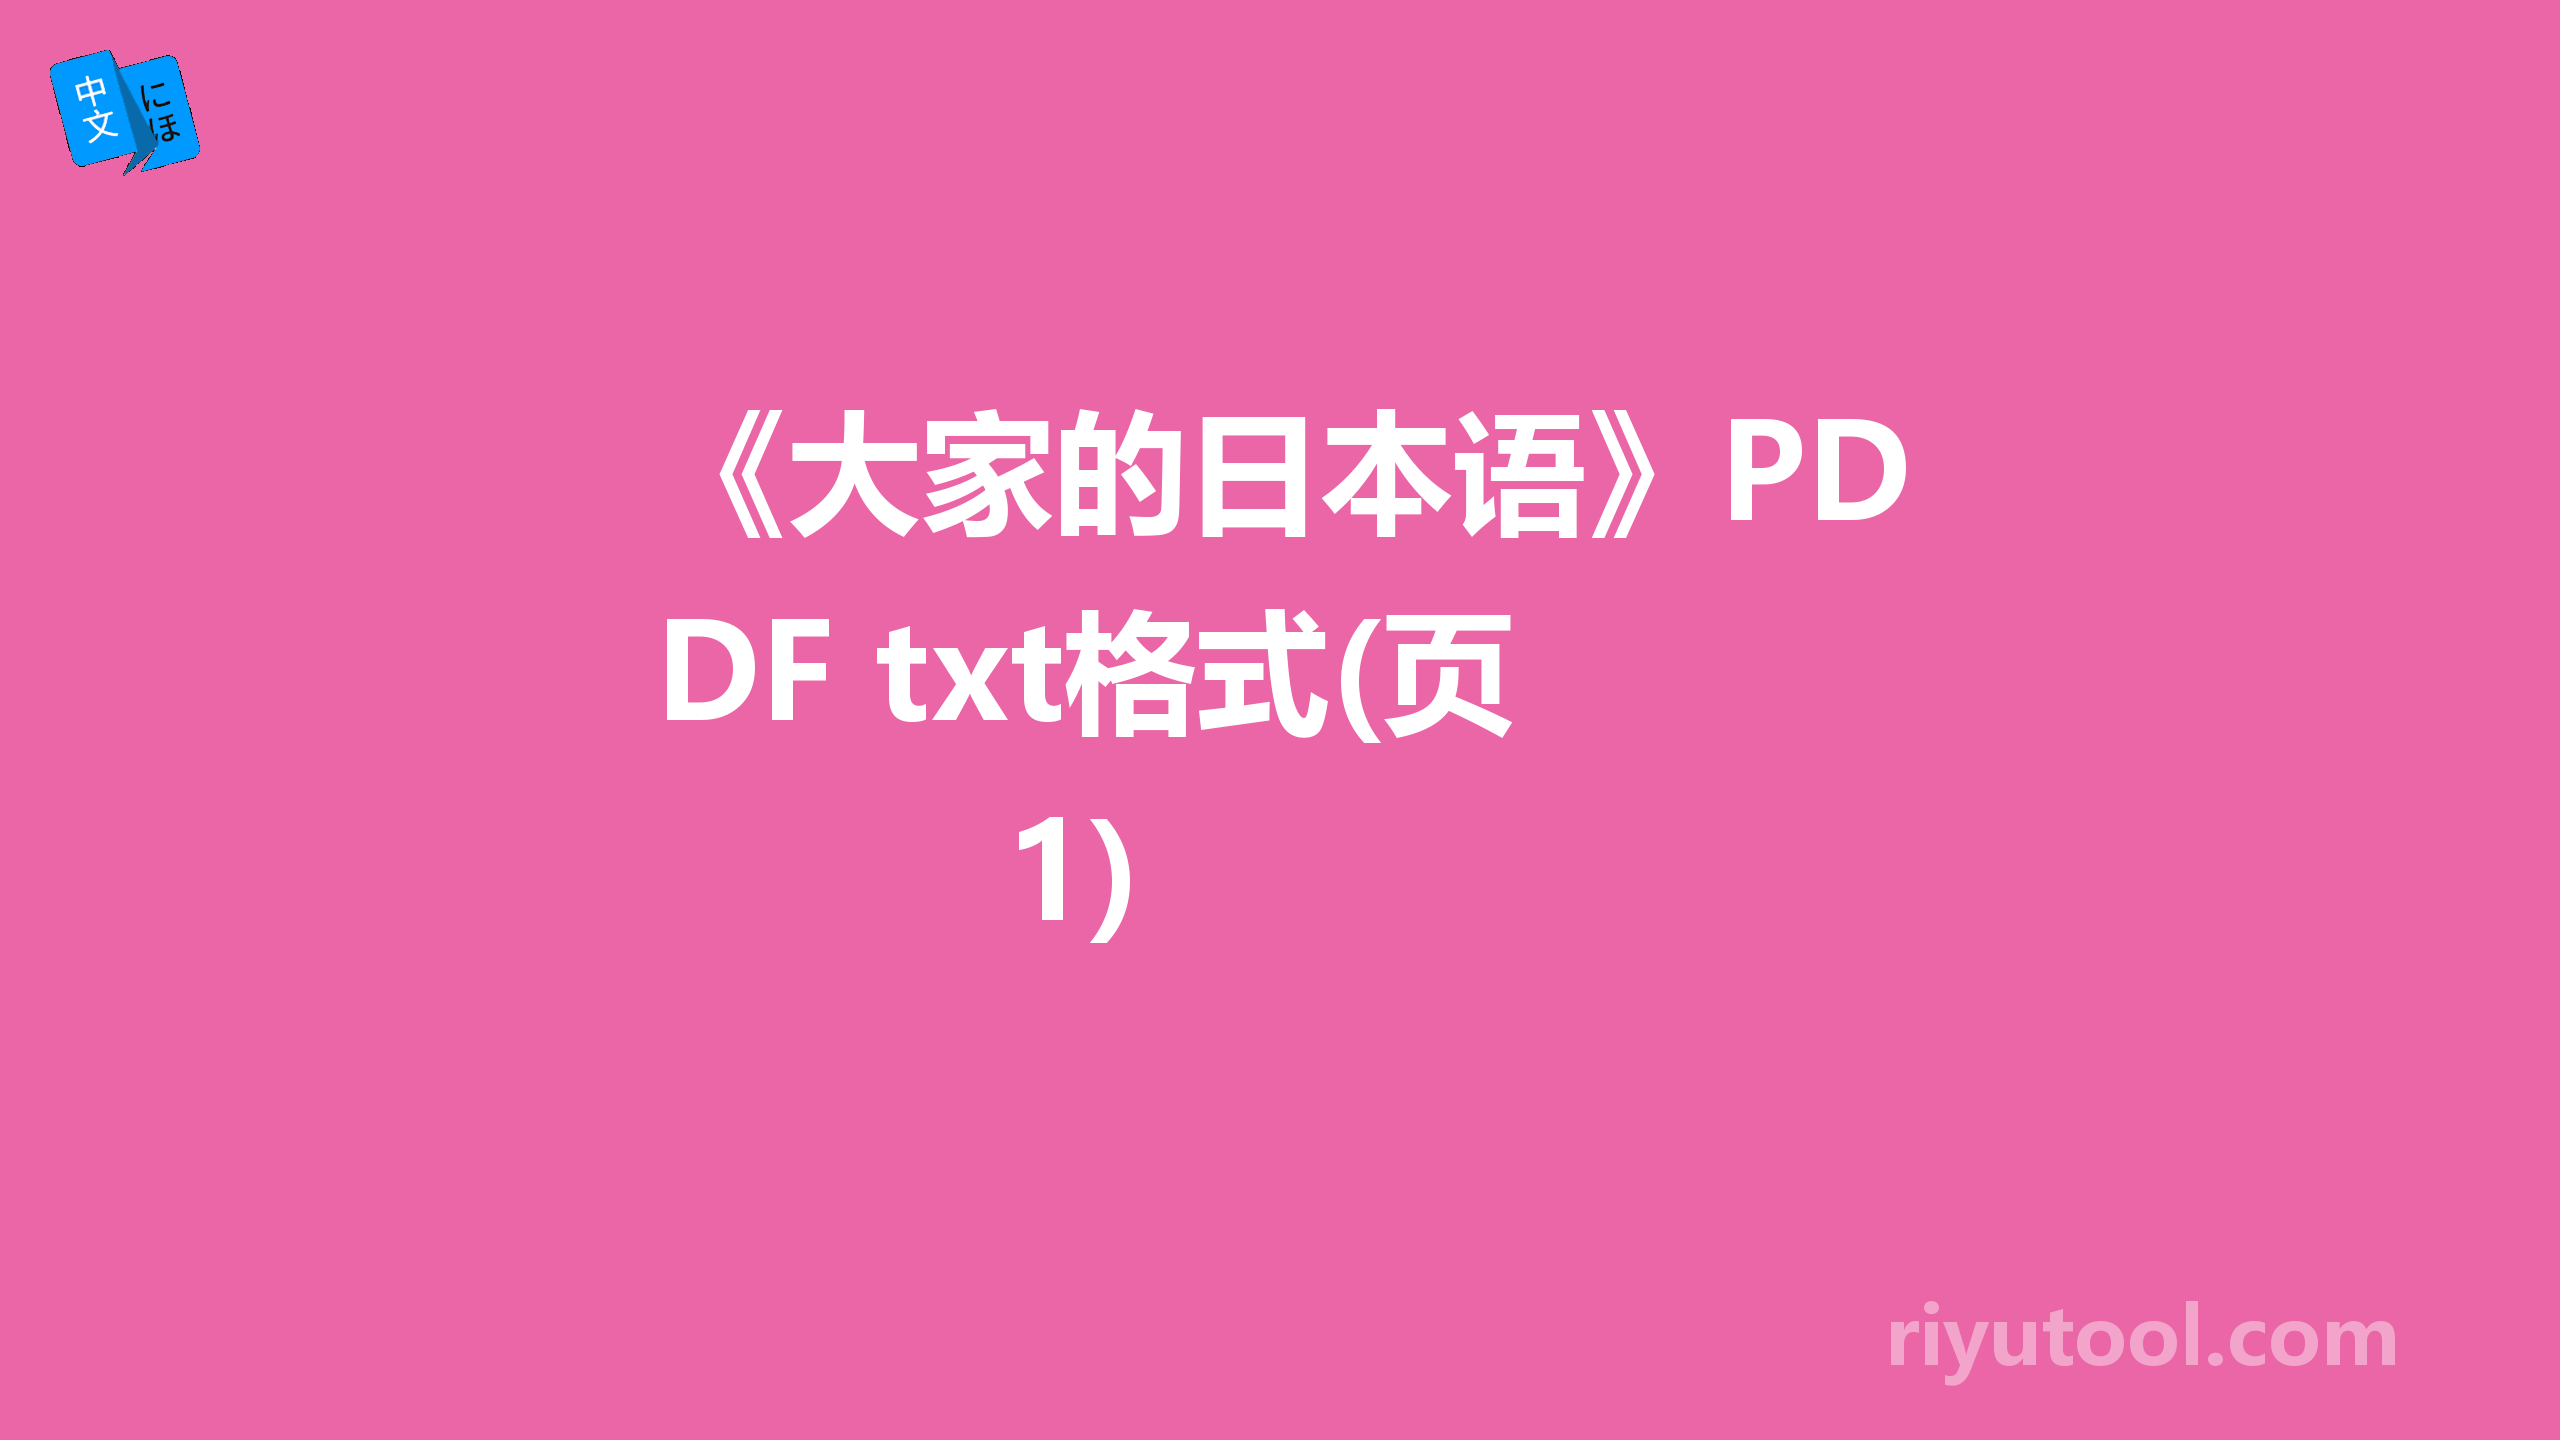 《大家的日本语》PDF+txt格式(页 1)  